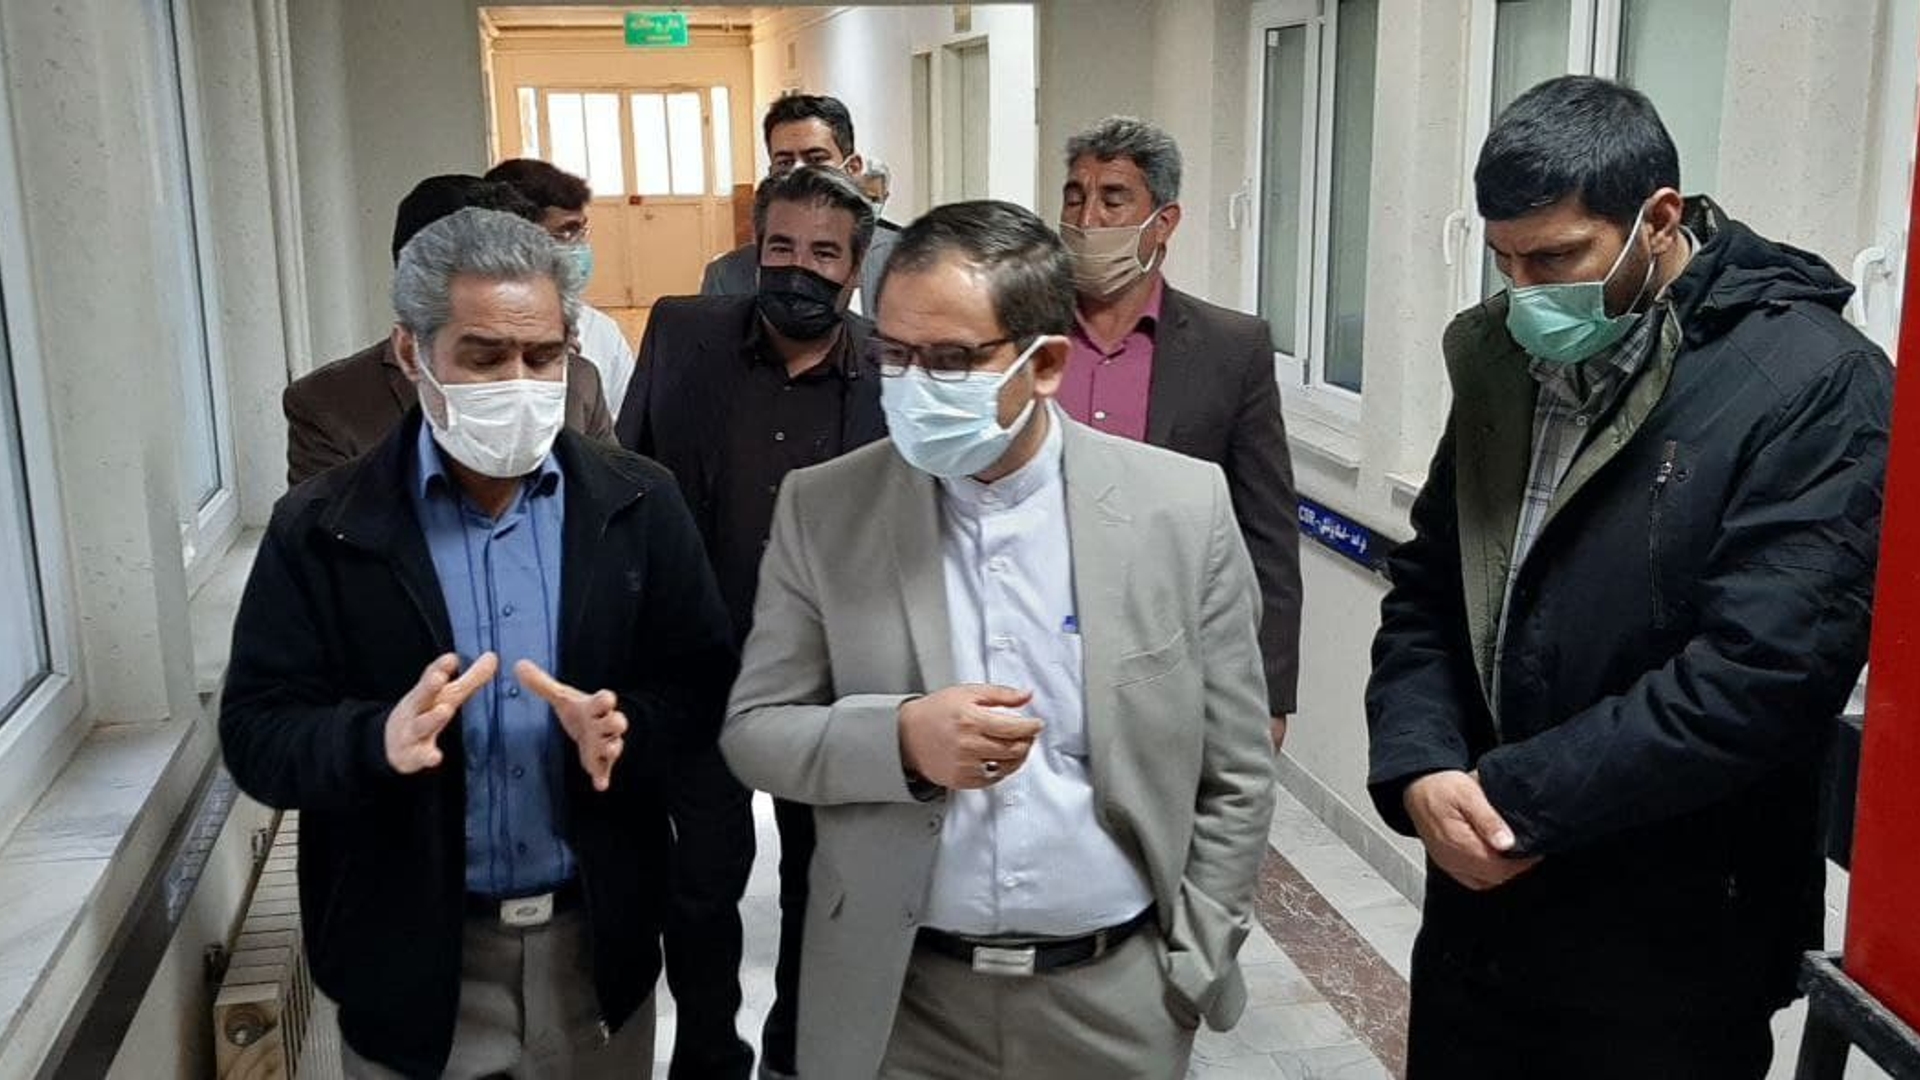 بازدید فرماندار به اتفاق اعضای شورای اسلامی شهرستان از بیمارستان امام علی(ع)کمیجان